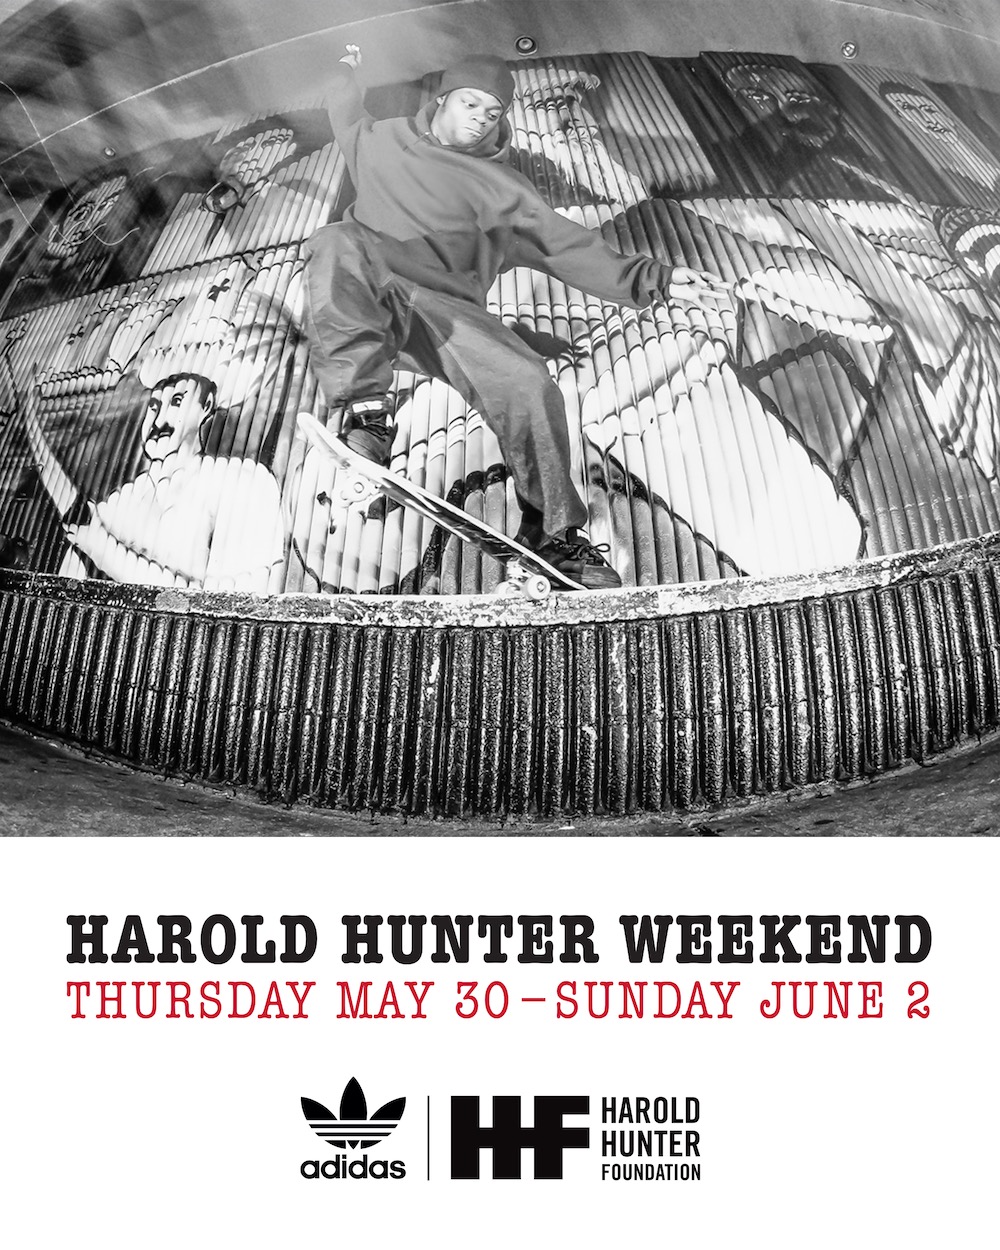 Harold Hunter Weekend Schedule Announced (2019)